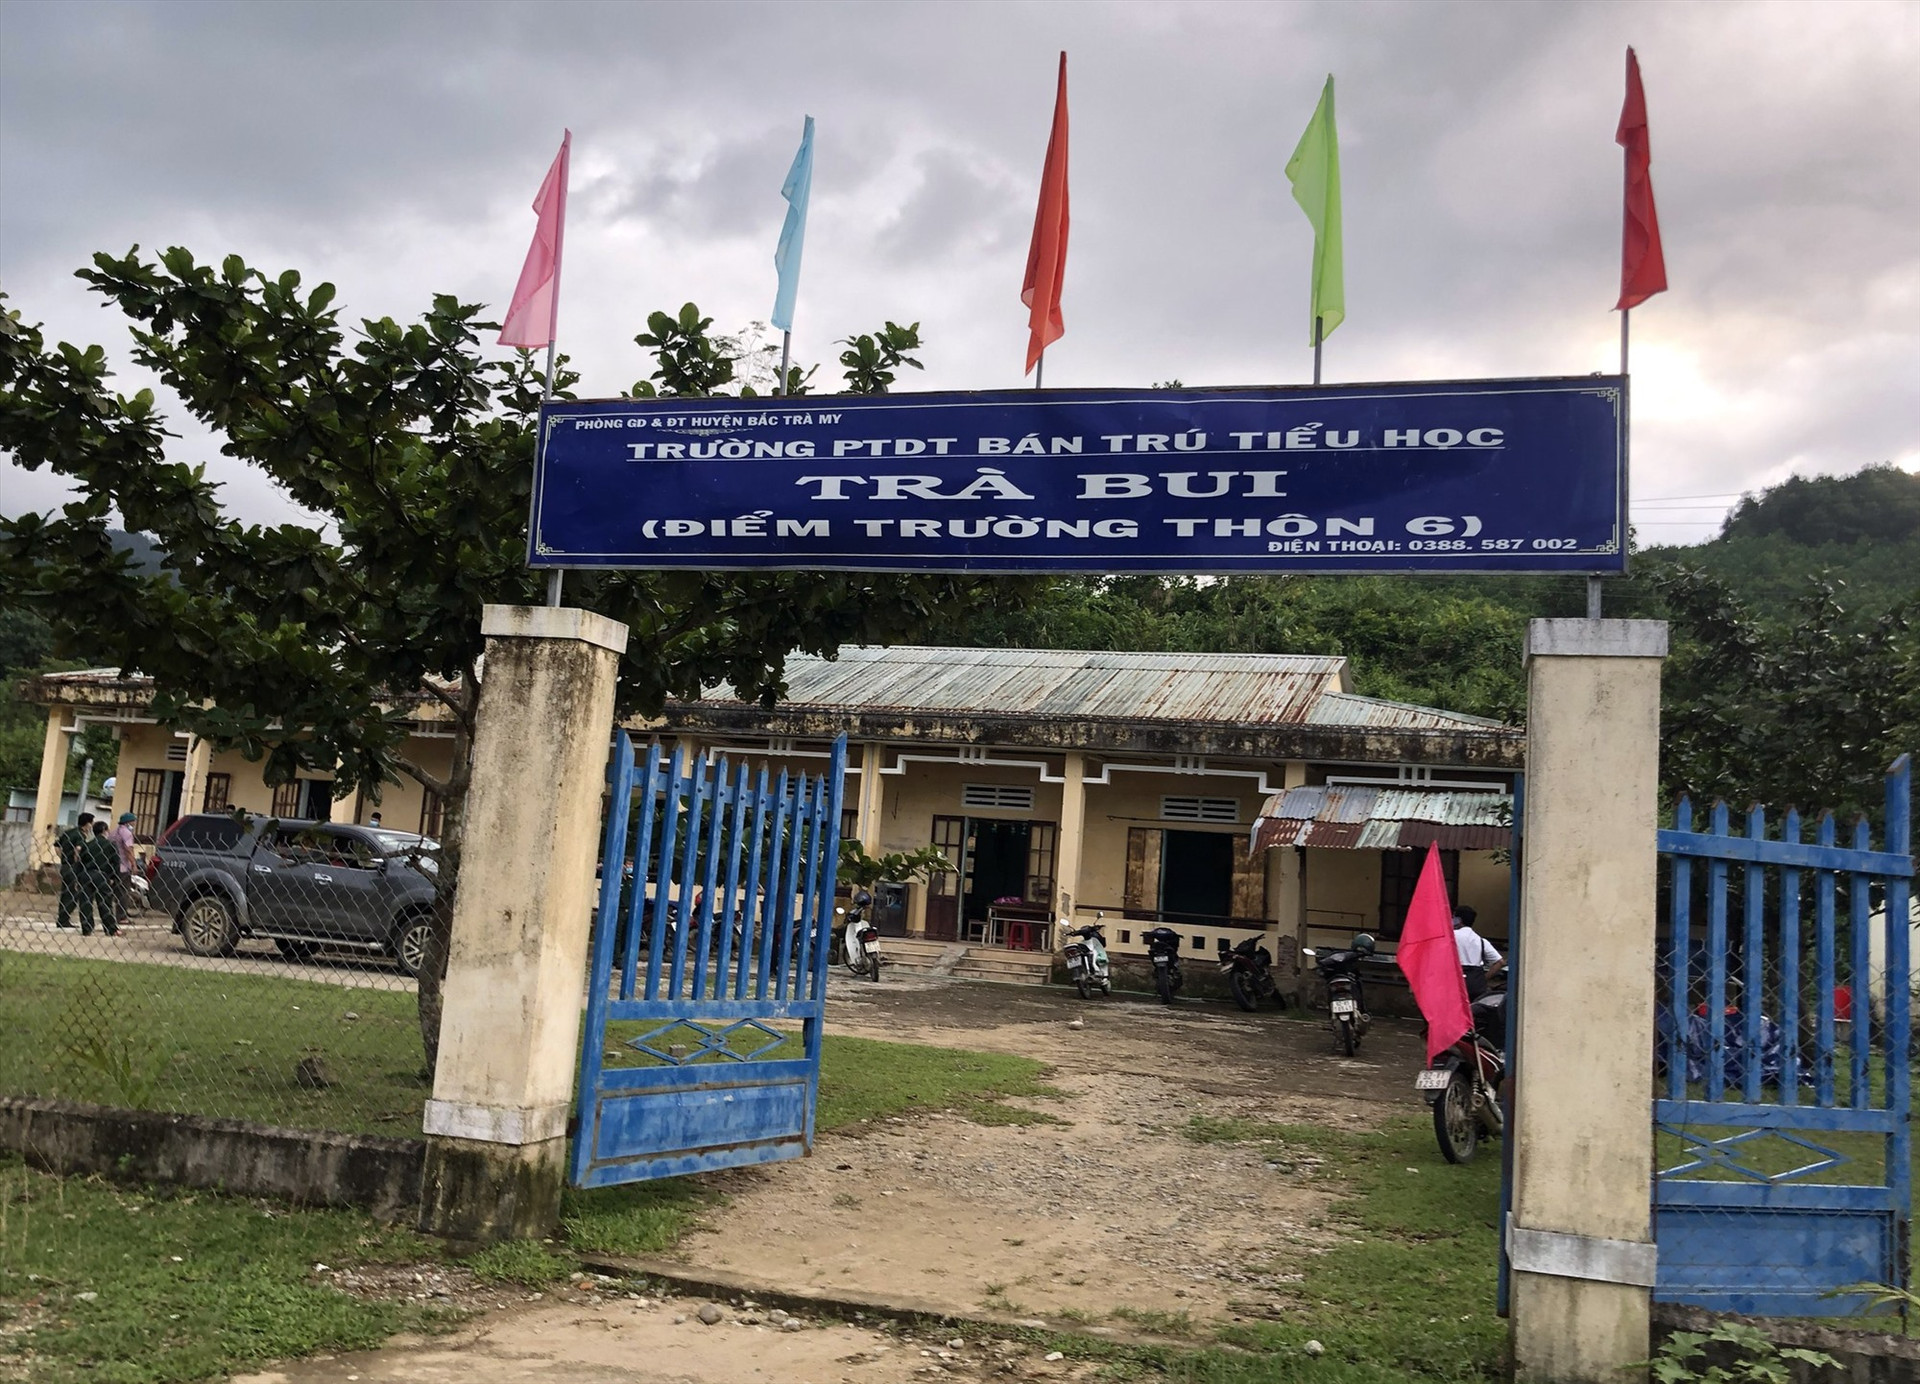 Điểm trường học thôn 6, xã Trà Bui được chọn làm khu cách ly tập trung cho số F1 là người dân địa phương.